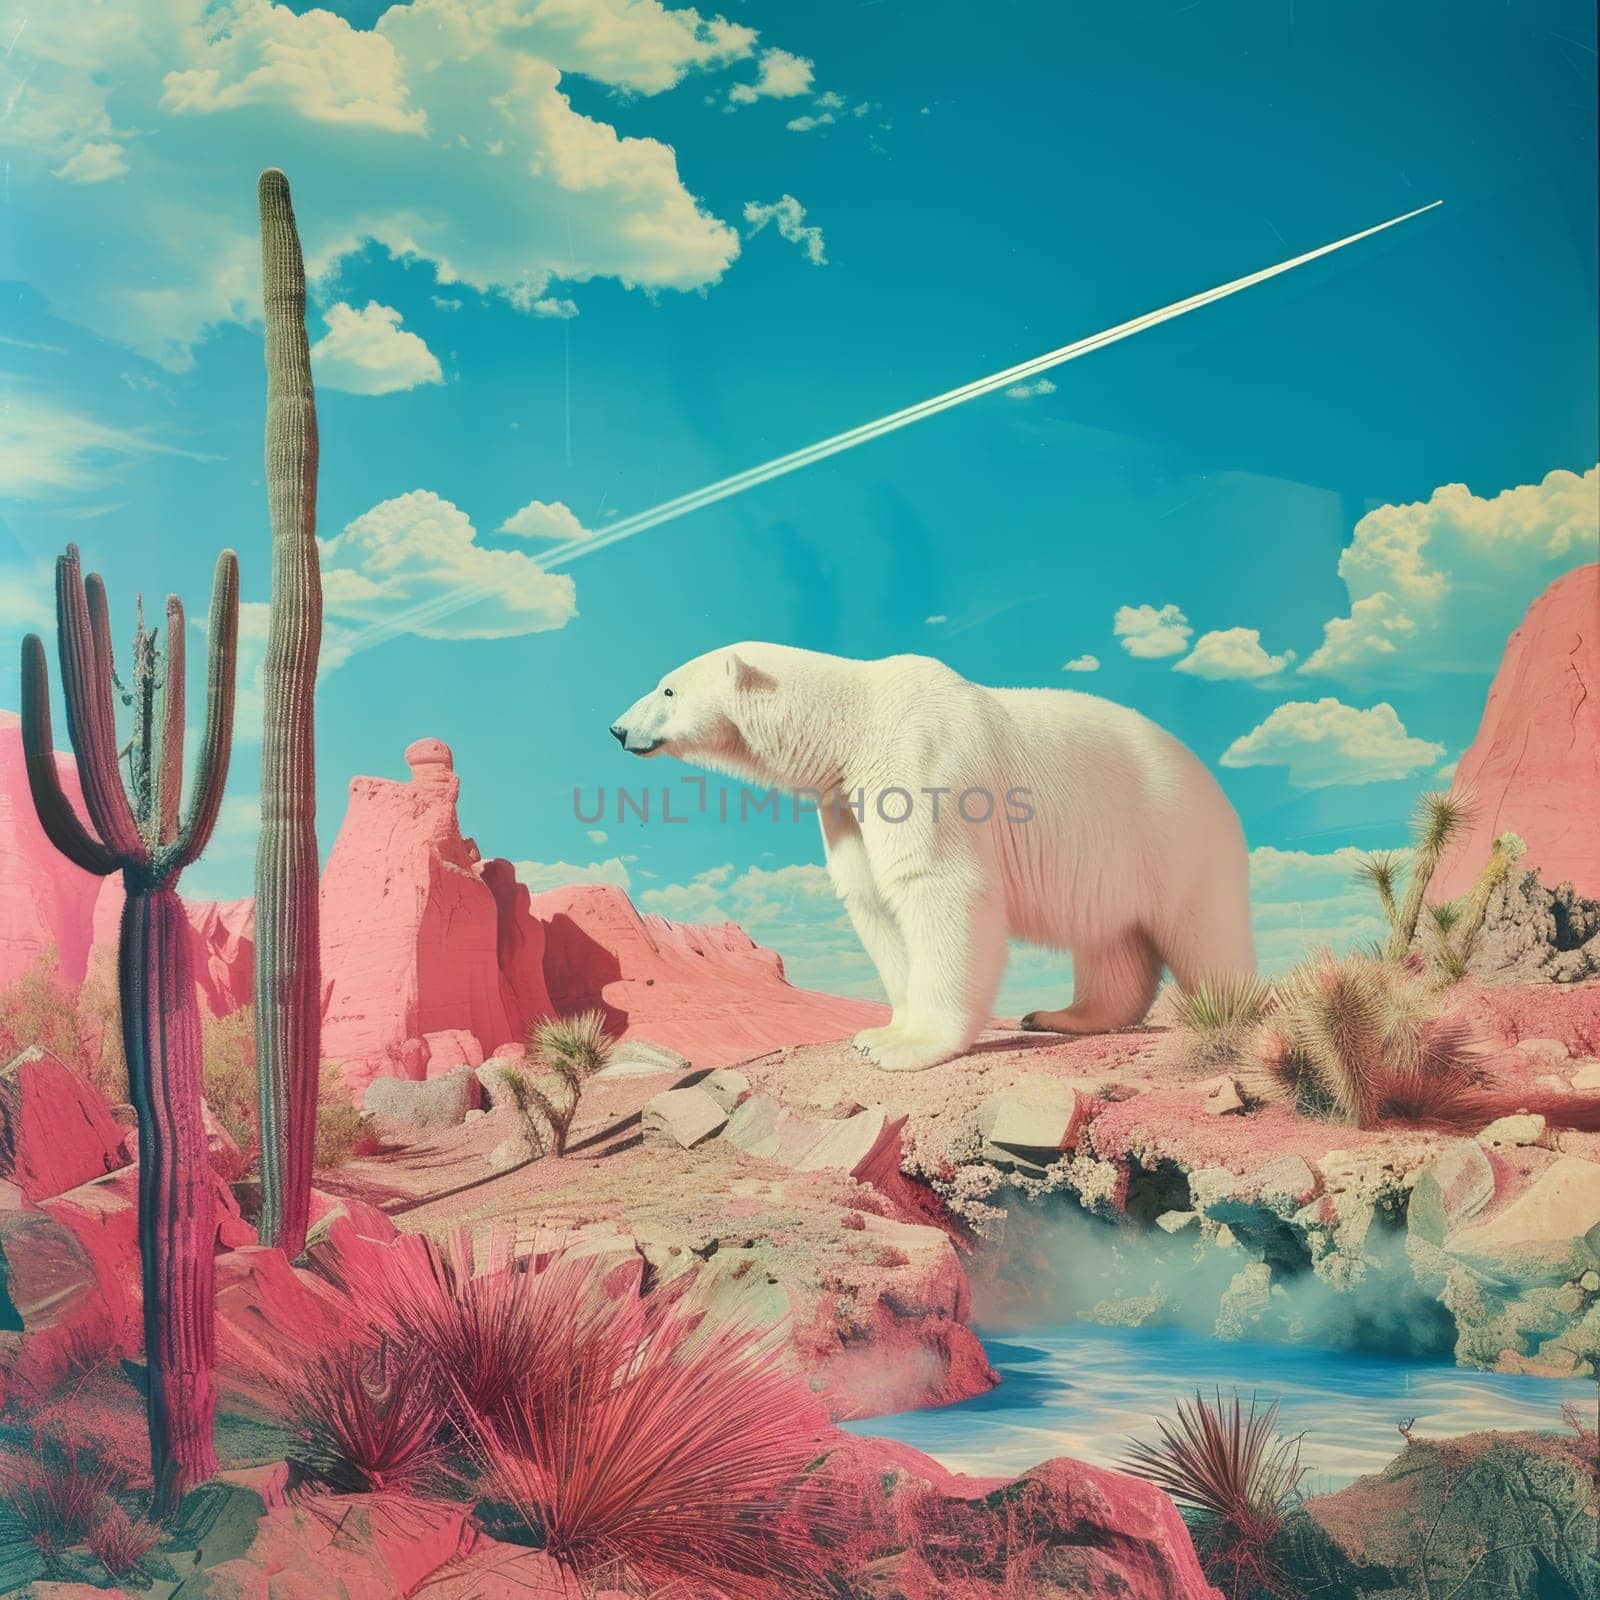 A polar bear walking through an arid desert, the concept of climate change by Lobachad